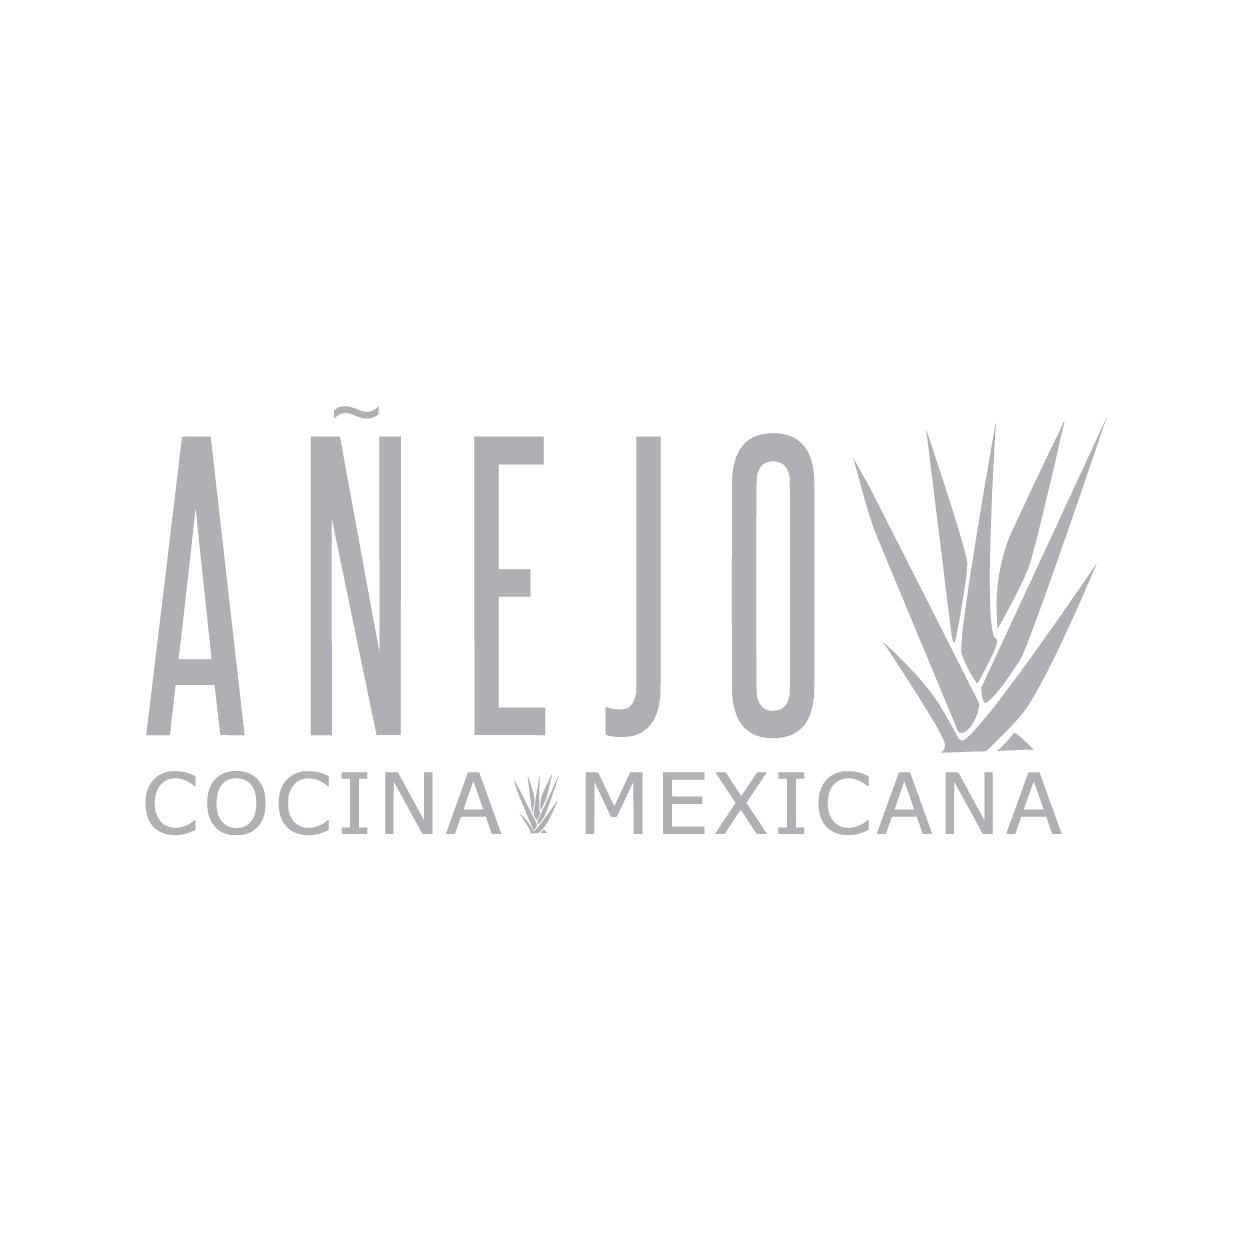 Anejo Cocina restaurant logo in gray